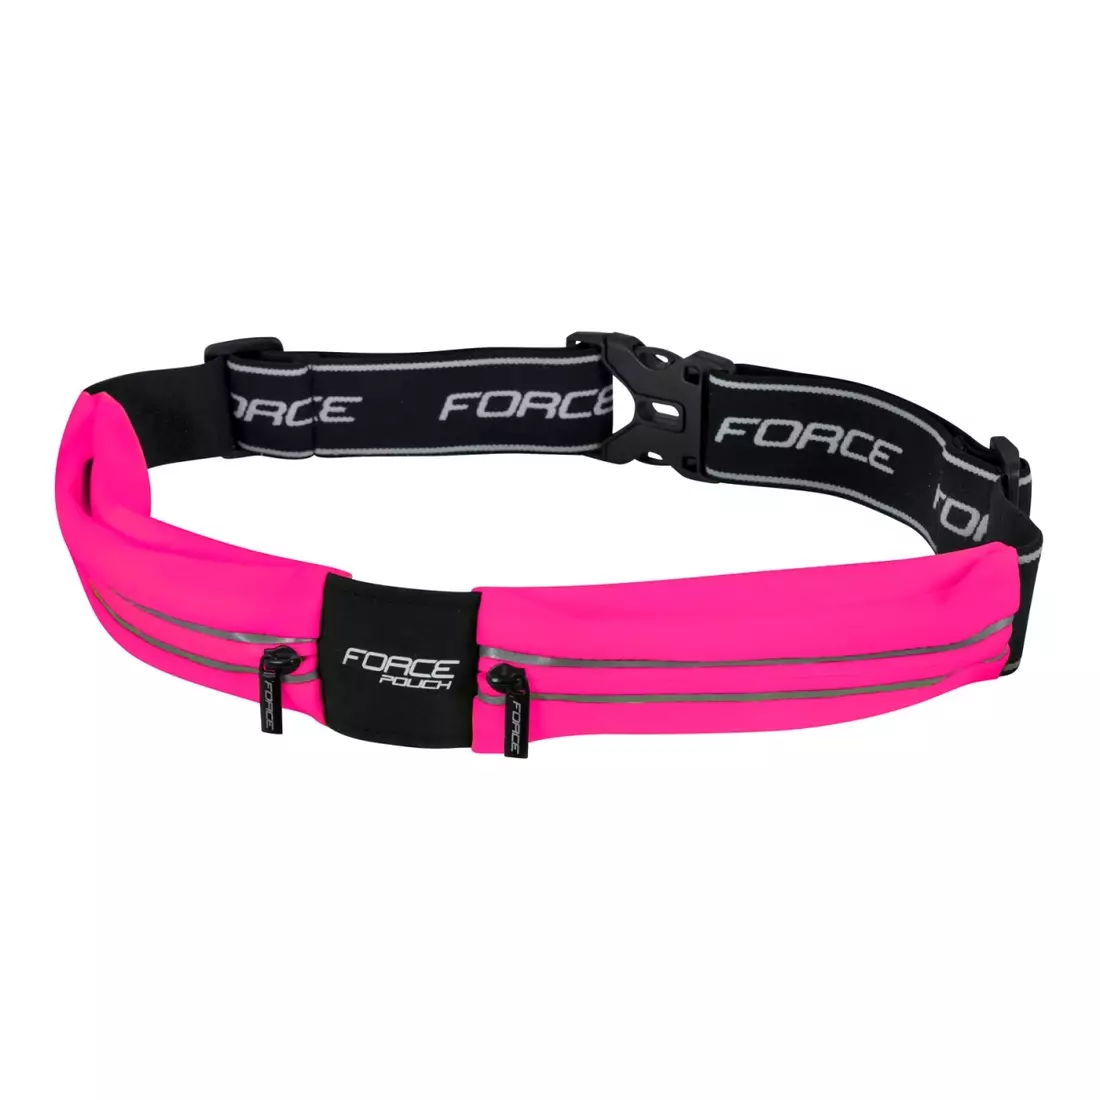 FORCE POUCH running waist belt, pink 896727